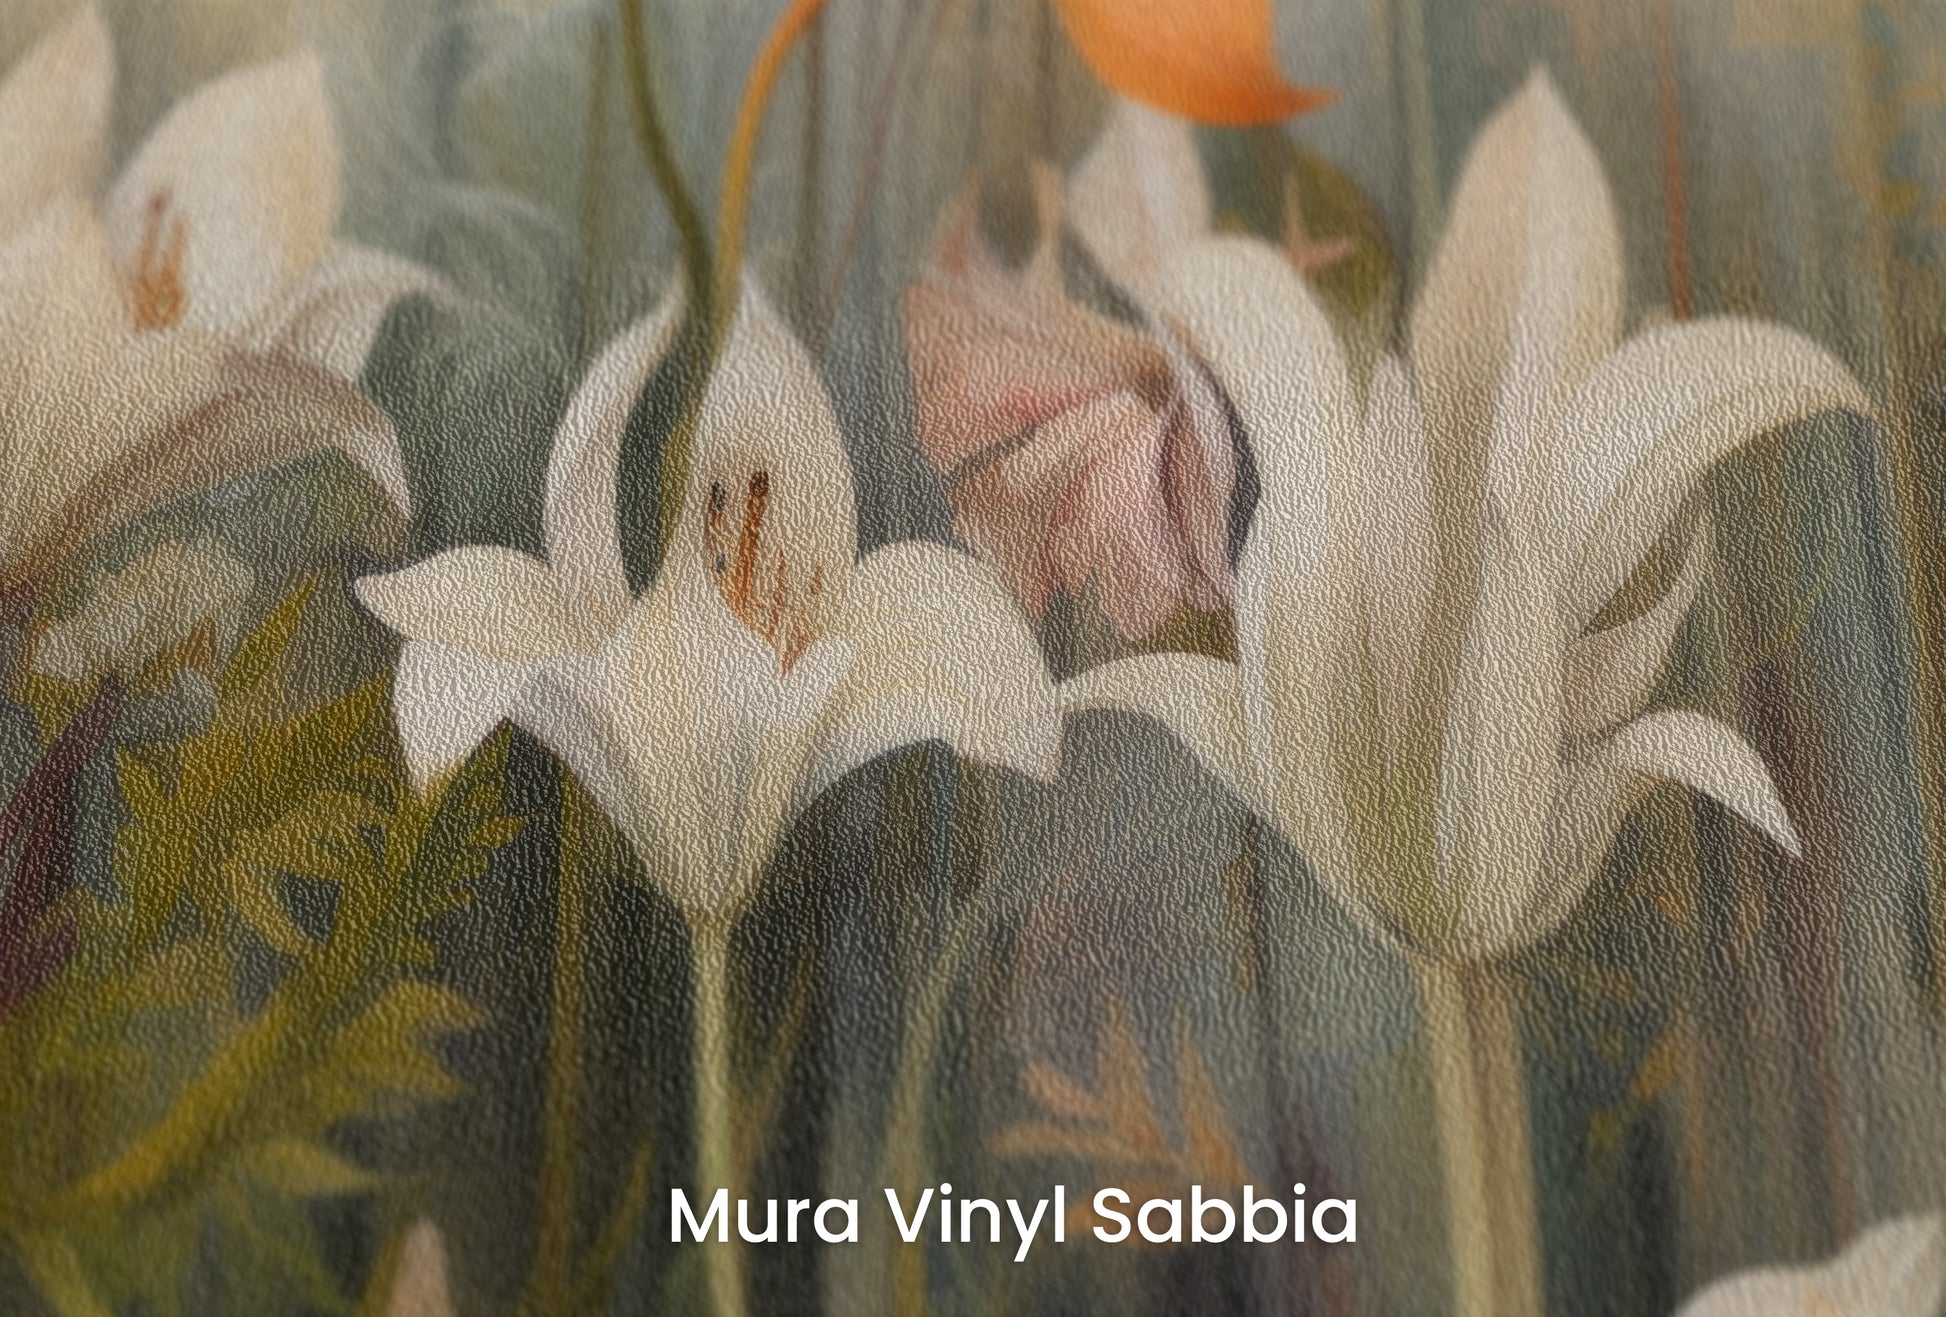 Zbliżenie na artystyczną fototapetę o nazwie Whispering Garden na podłożu Mura Vinyl Sabbia struktura grubego ziarna piasku.